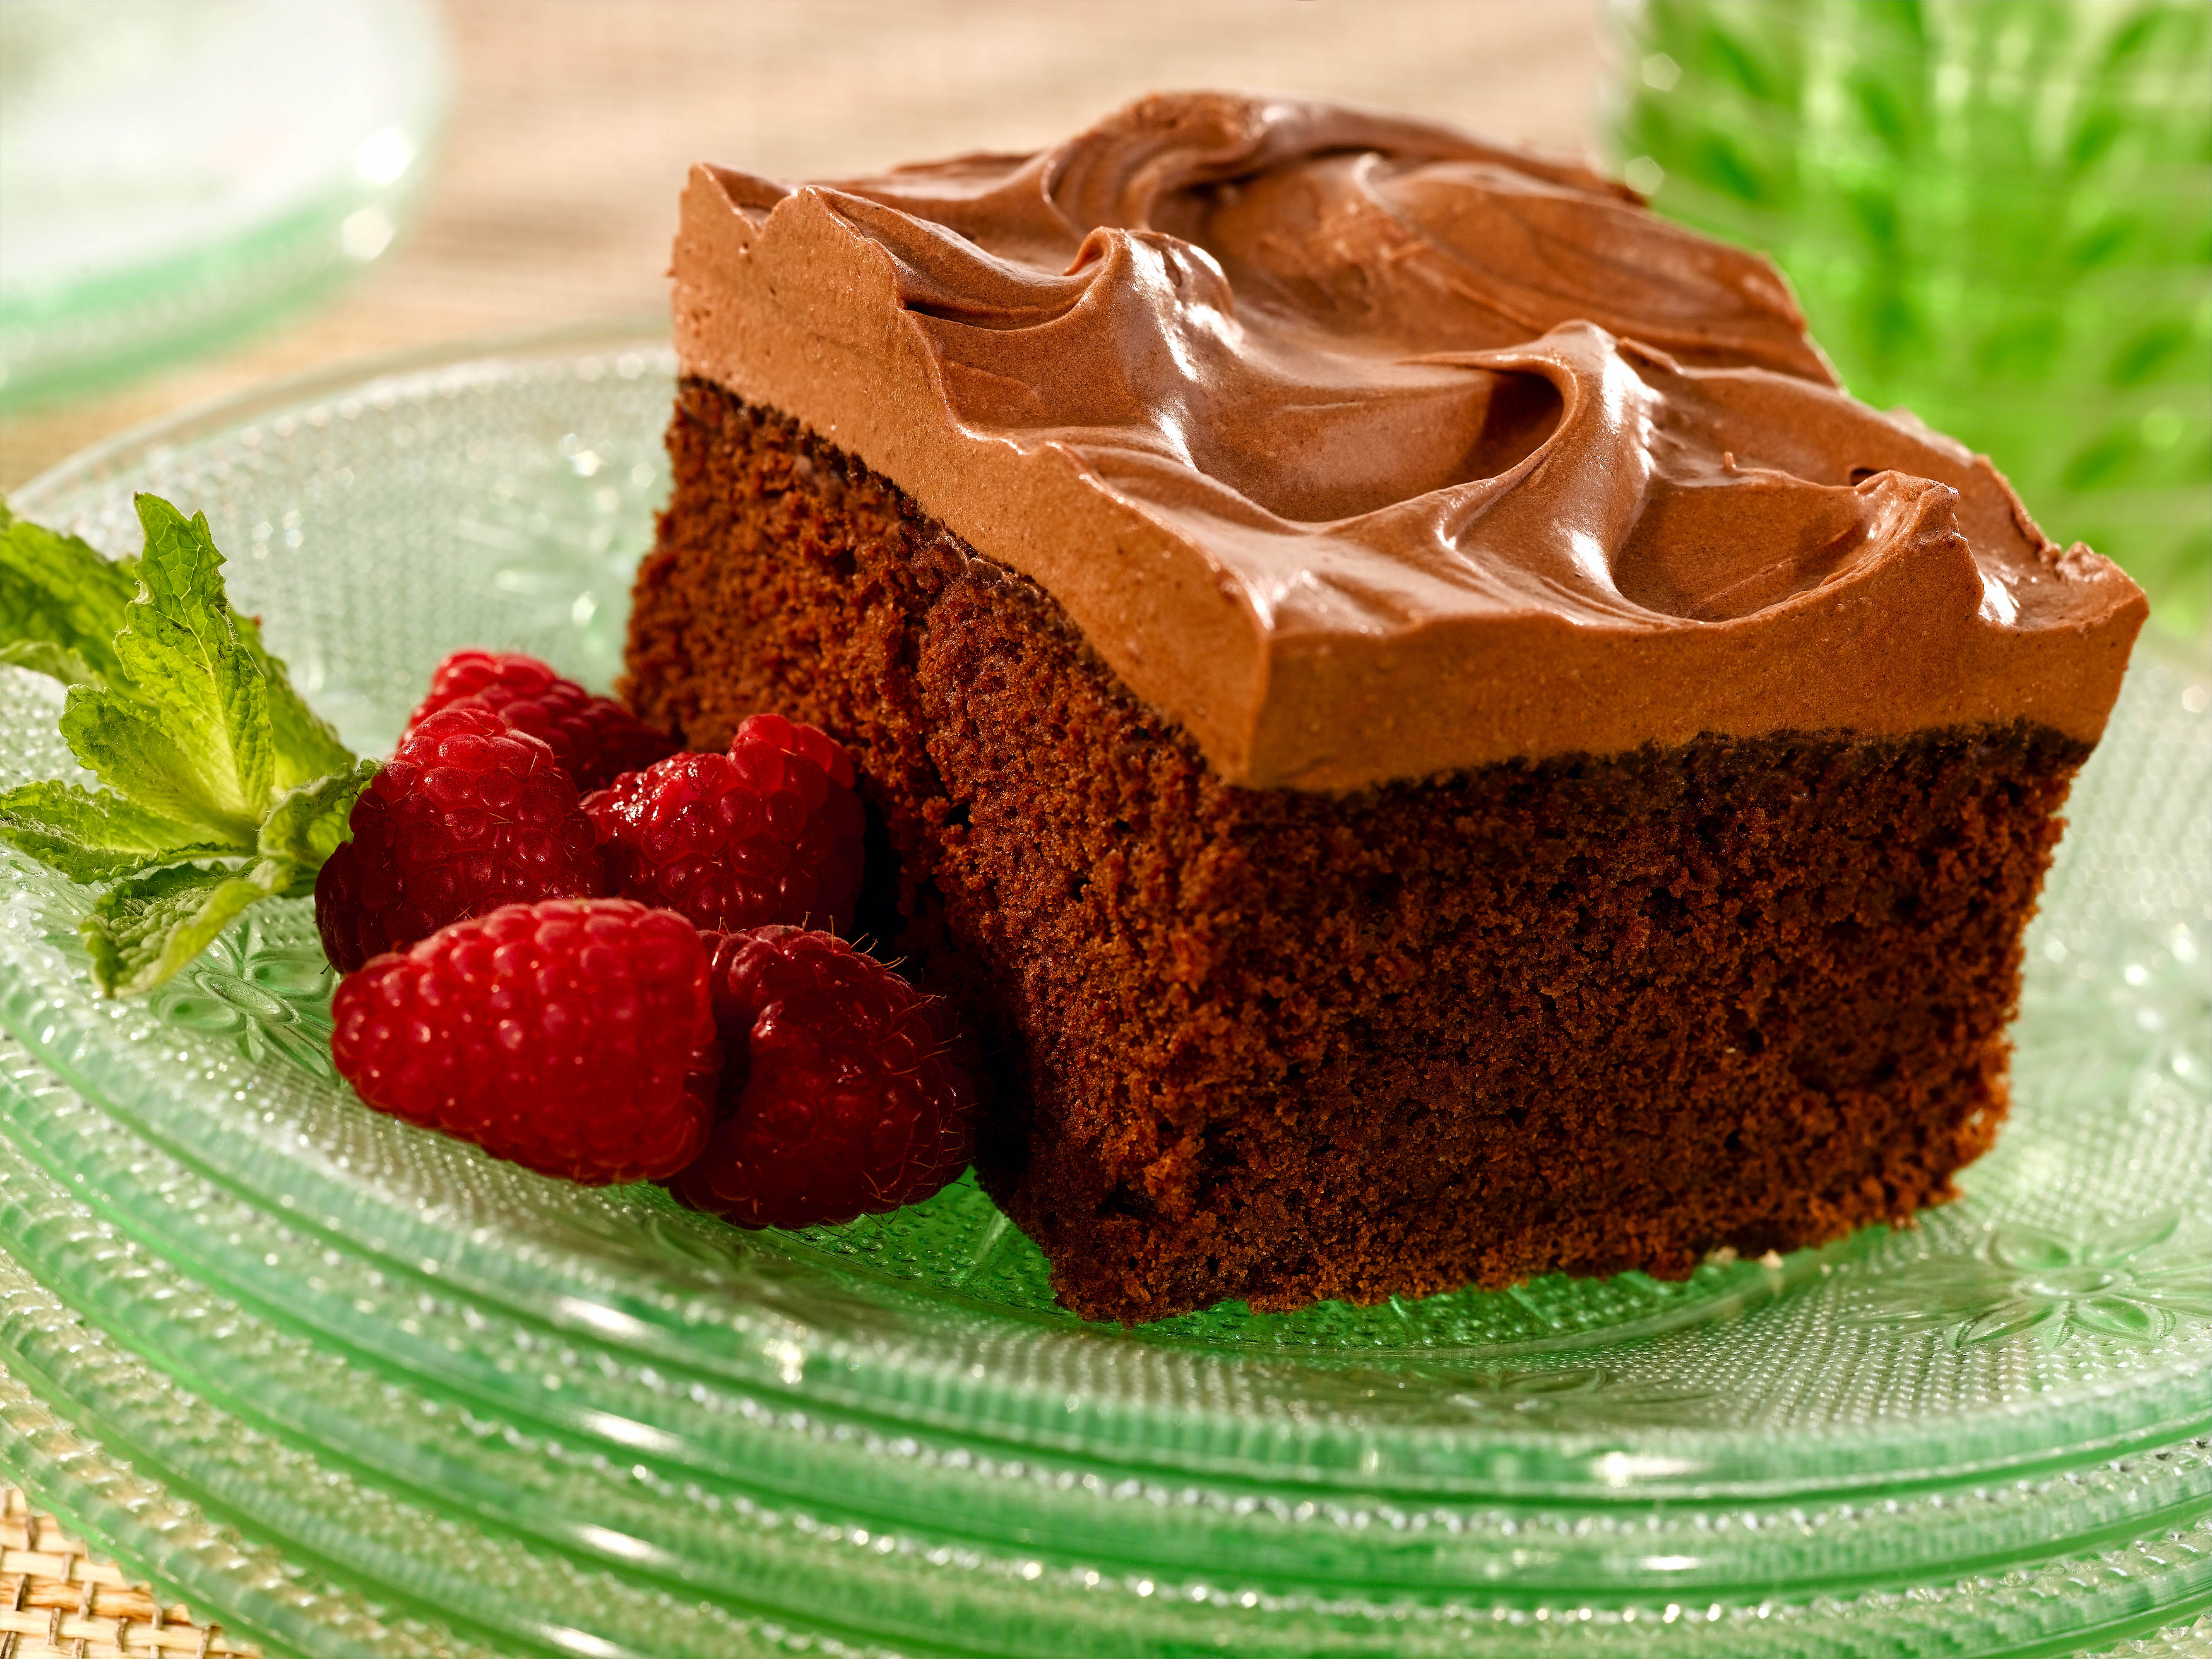 General 5344x4008 food chocolate brownie raspberries cake closeup